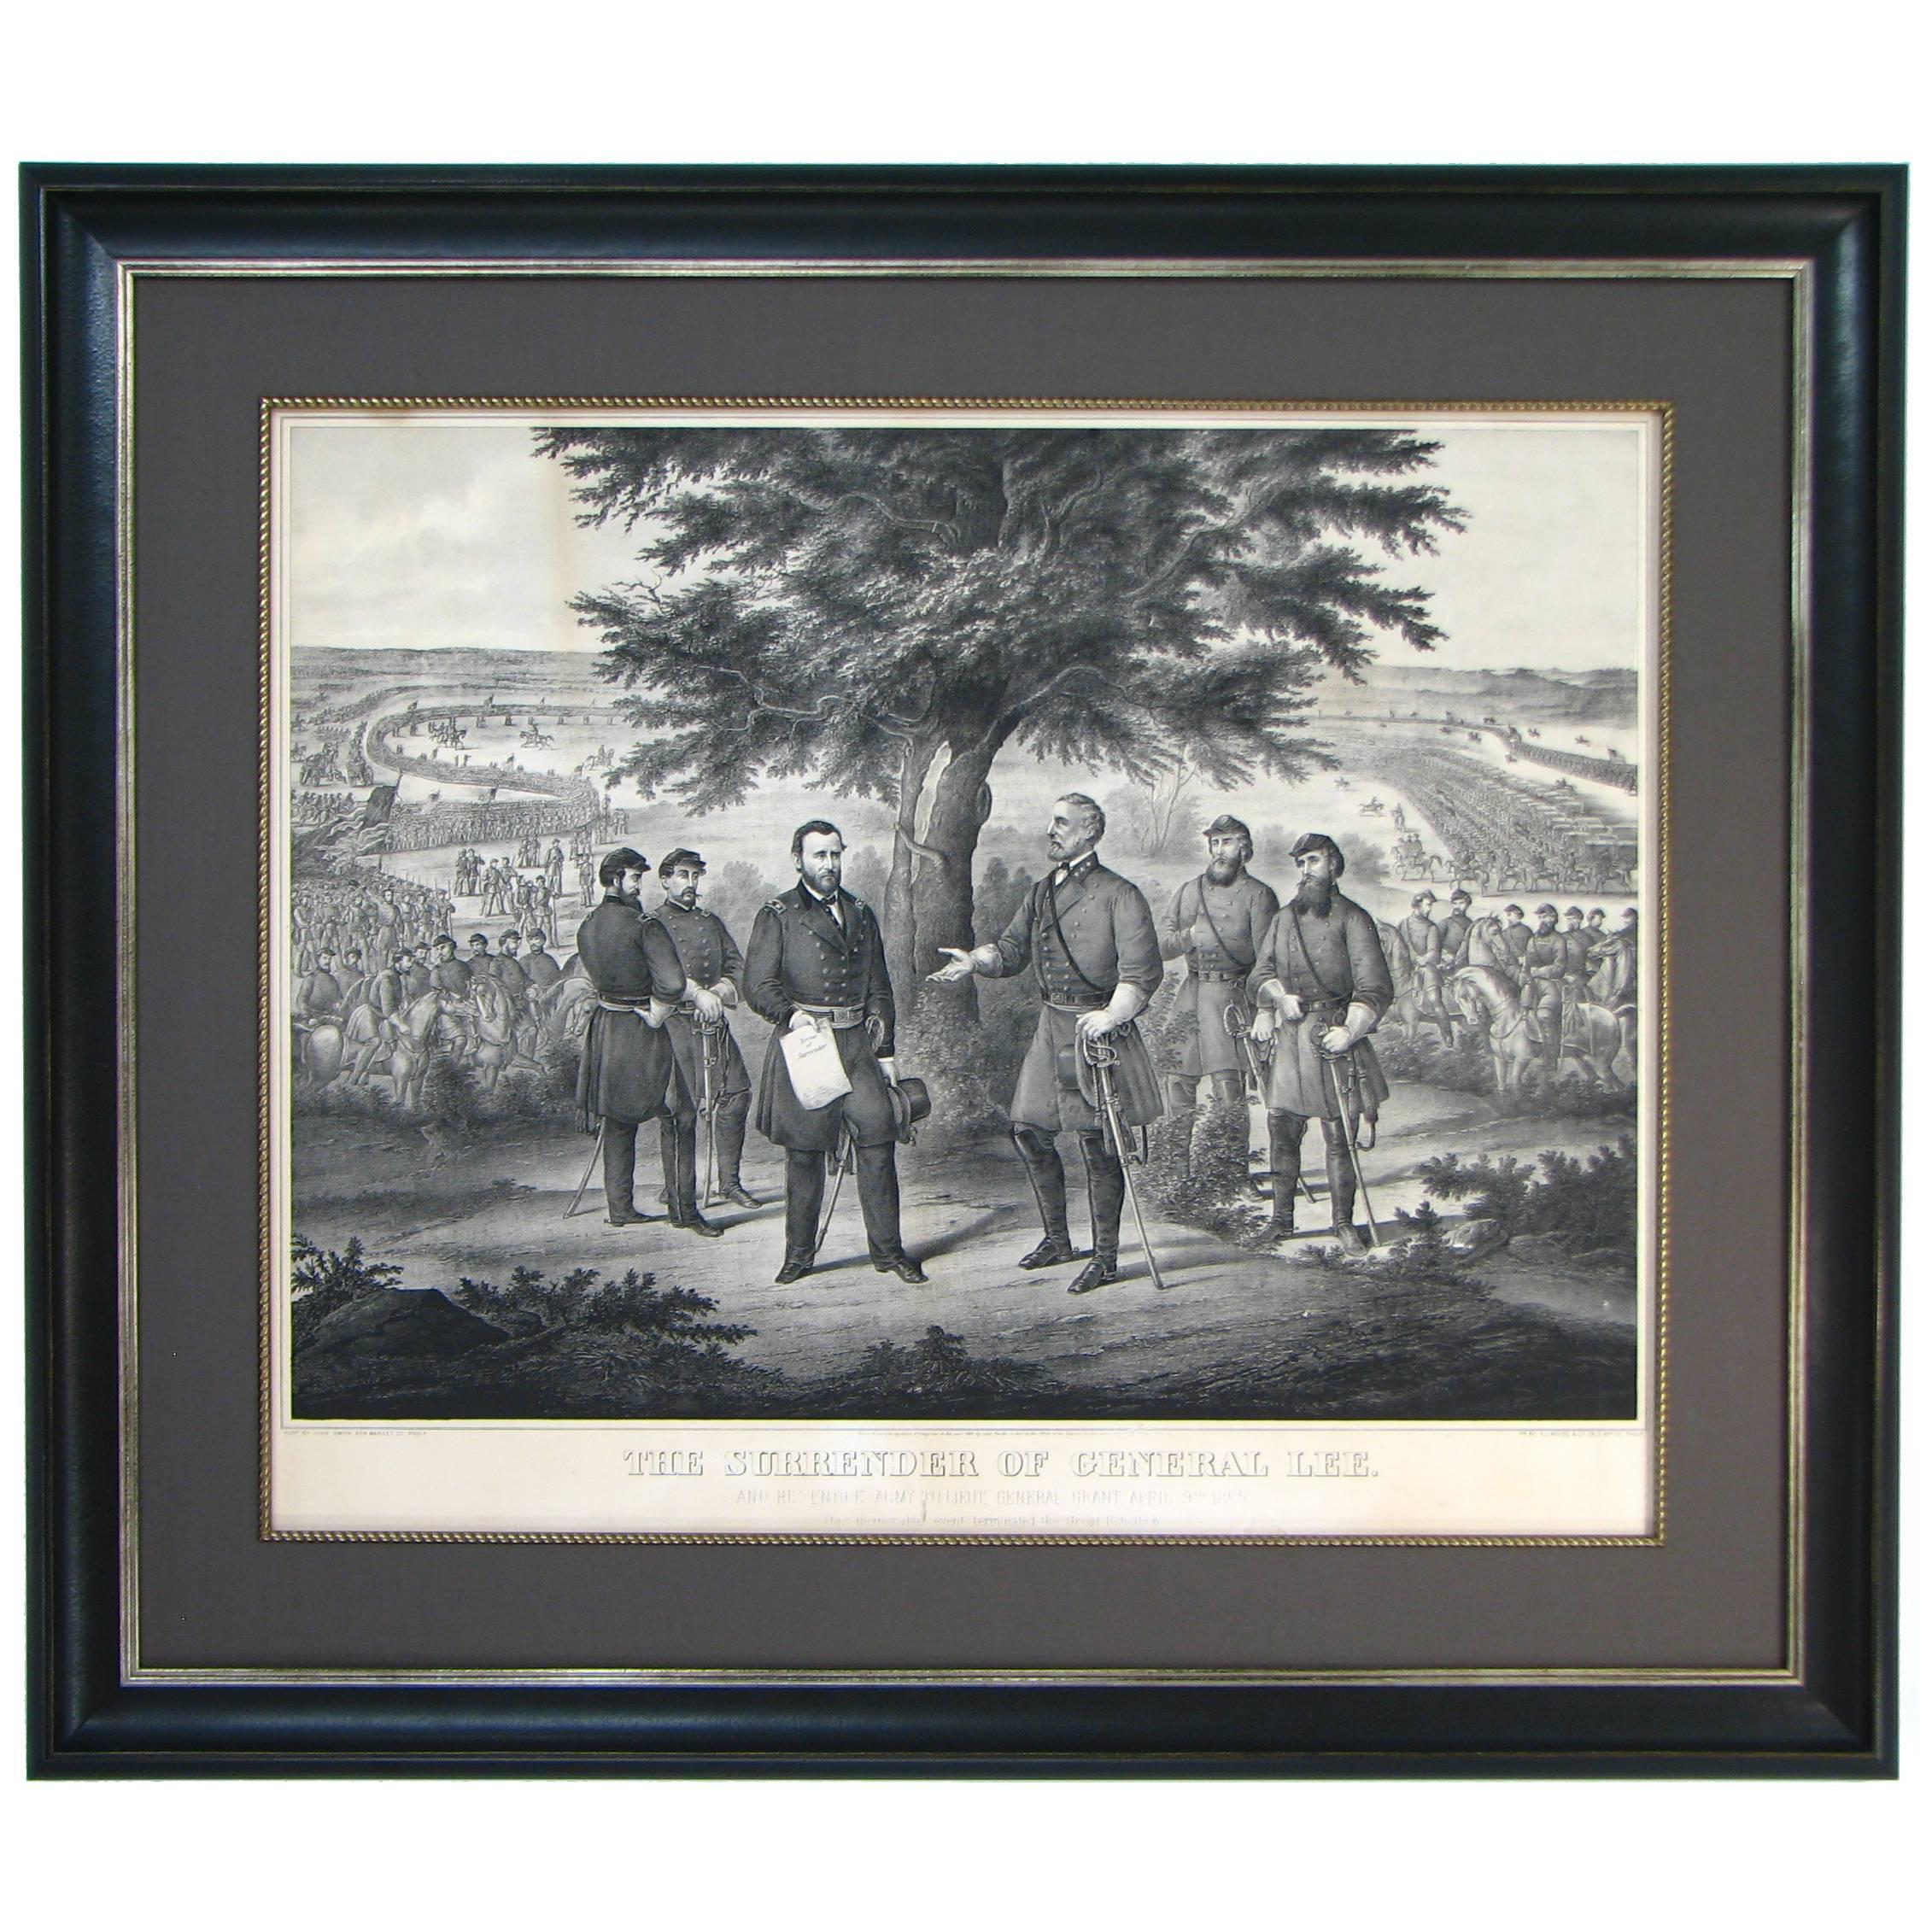 "The Surrender of General Lee" 1868 Engraving by John McRae